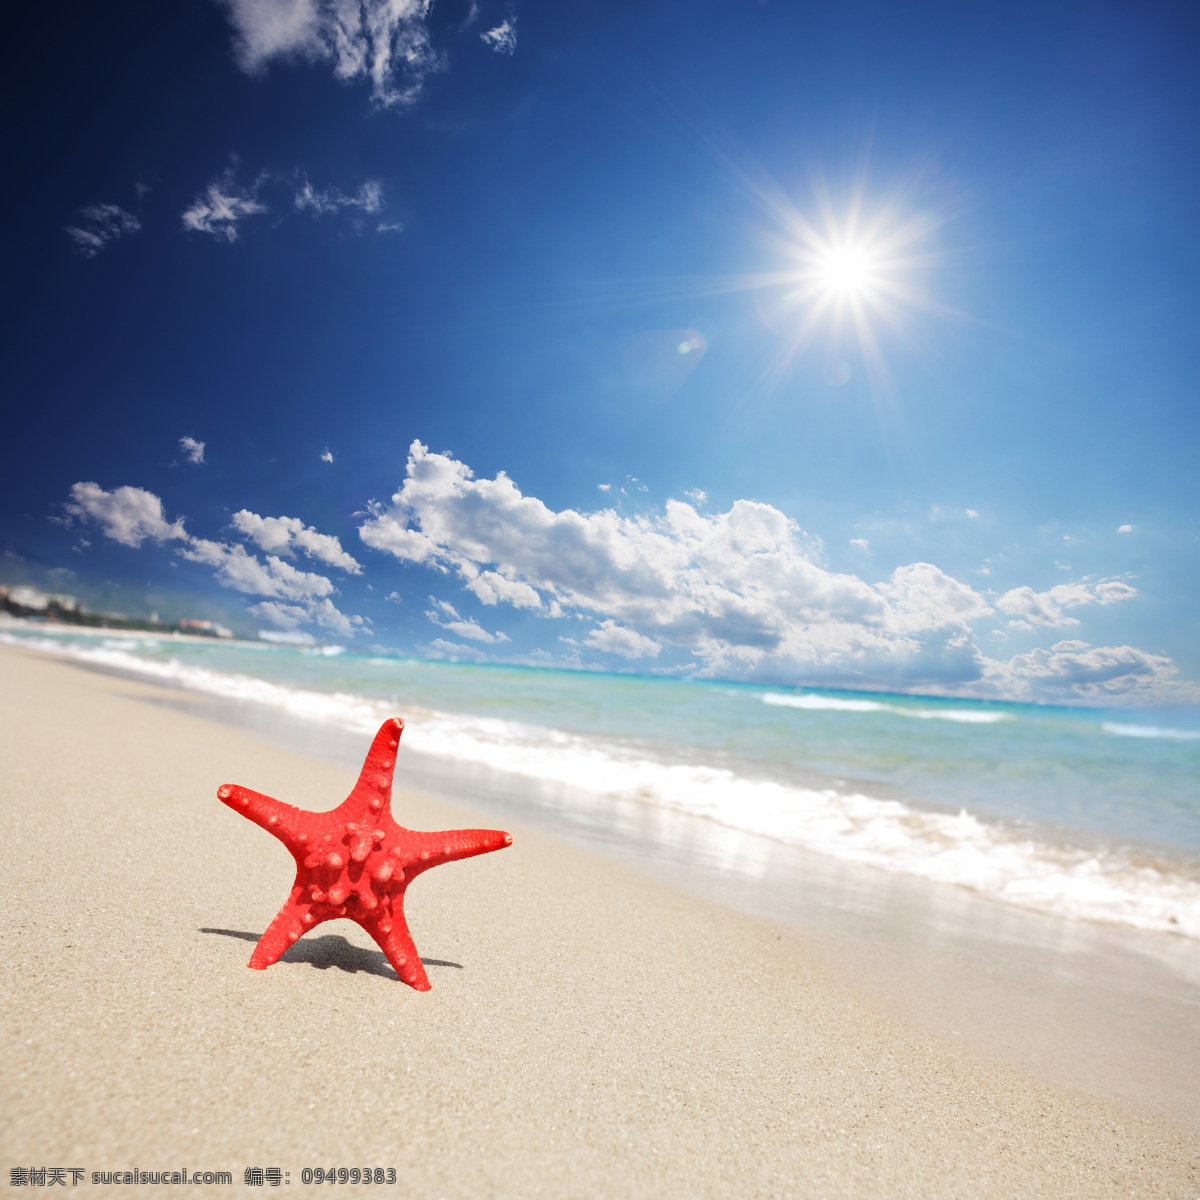 海星图片素材 沙滩 海边 海星 蓝色大海 海浪 白云 阳光照射